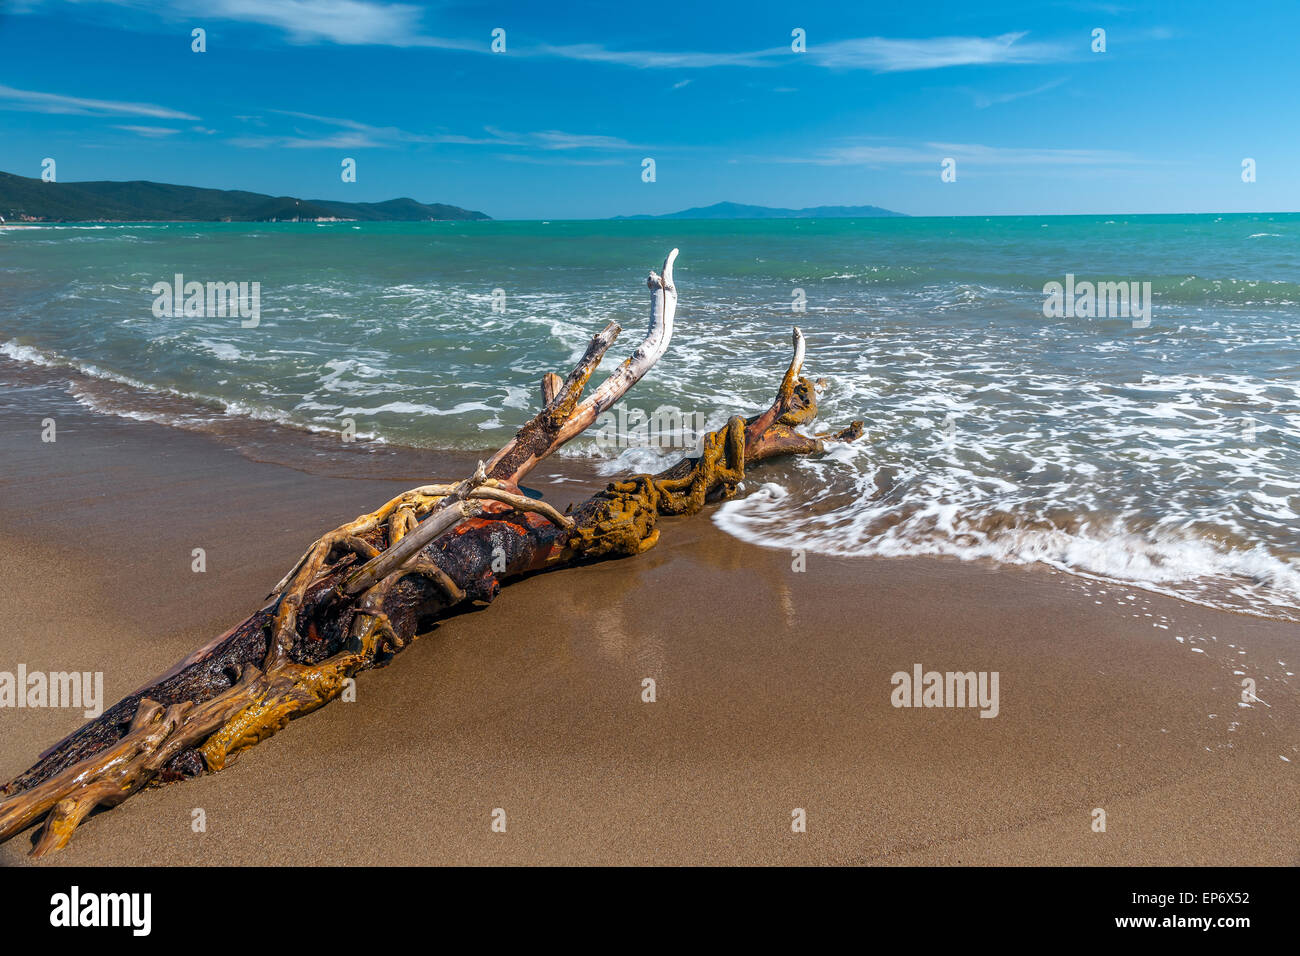 Snag on a beach Stock Photo